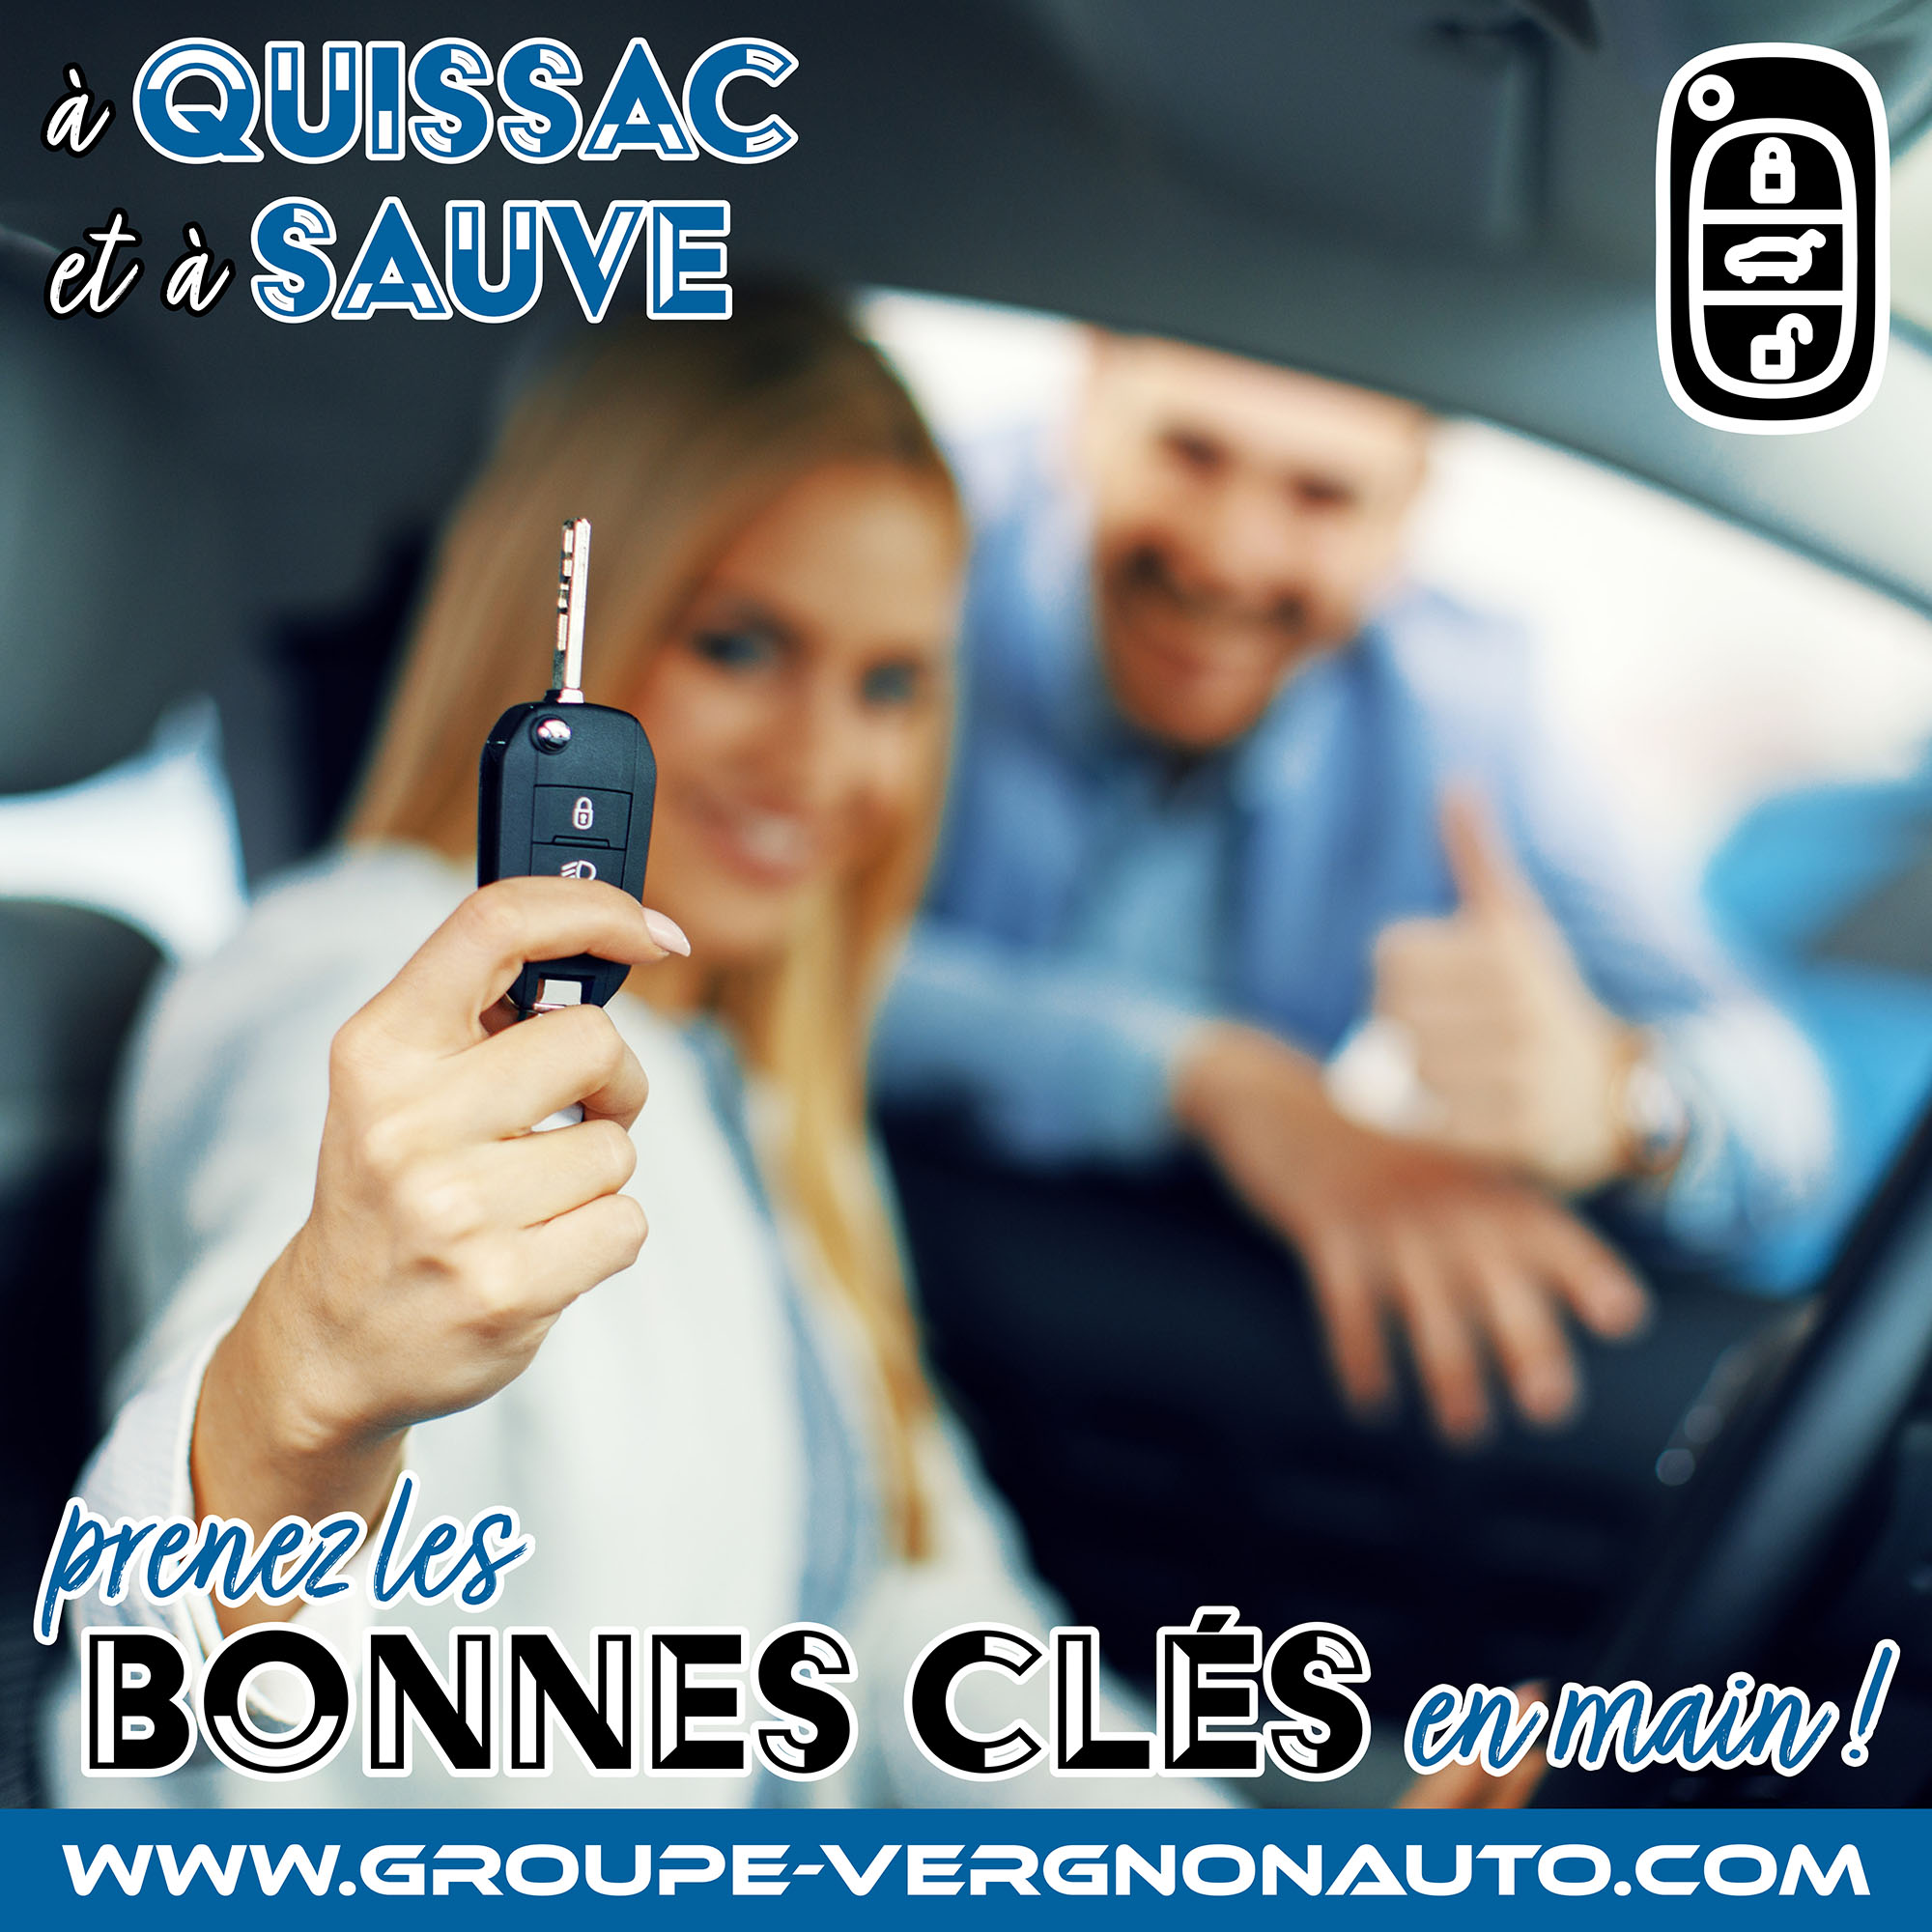 Peugeot, Citroën, Renault, Dacia et autres marques ! Sur nos parcs véhicules occasion de Quissac et de Sauve, prenez les bonnes clés en main !